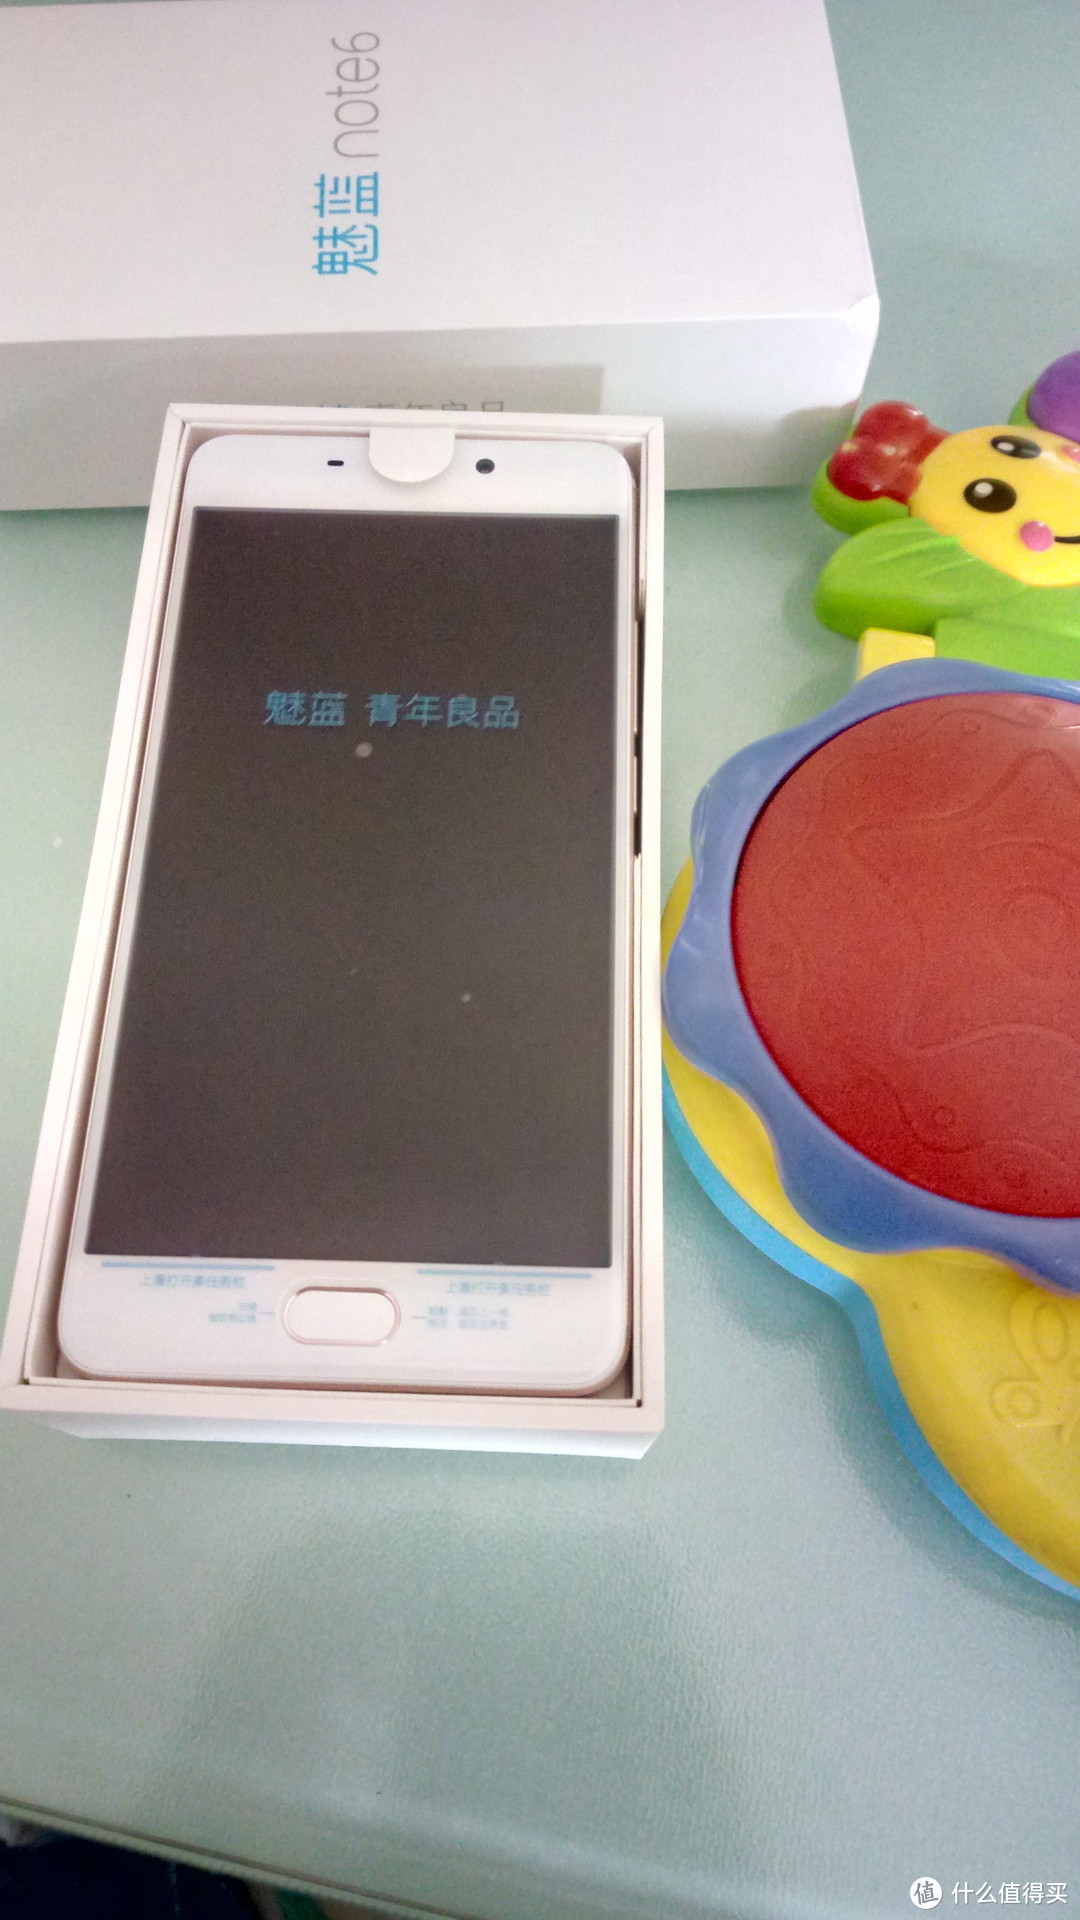 可能是我用过的“最短命”的手机—MEIZU 魅族 魅蓝 Note6 使用感受